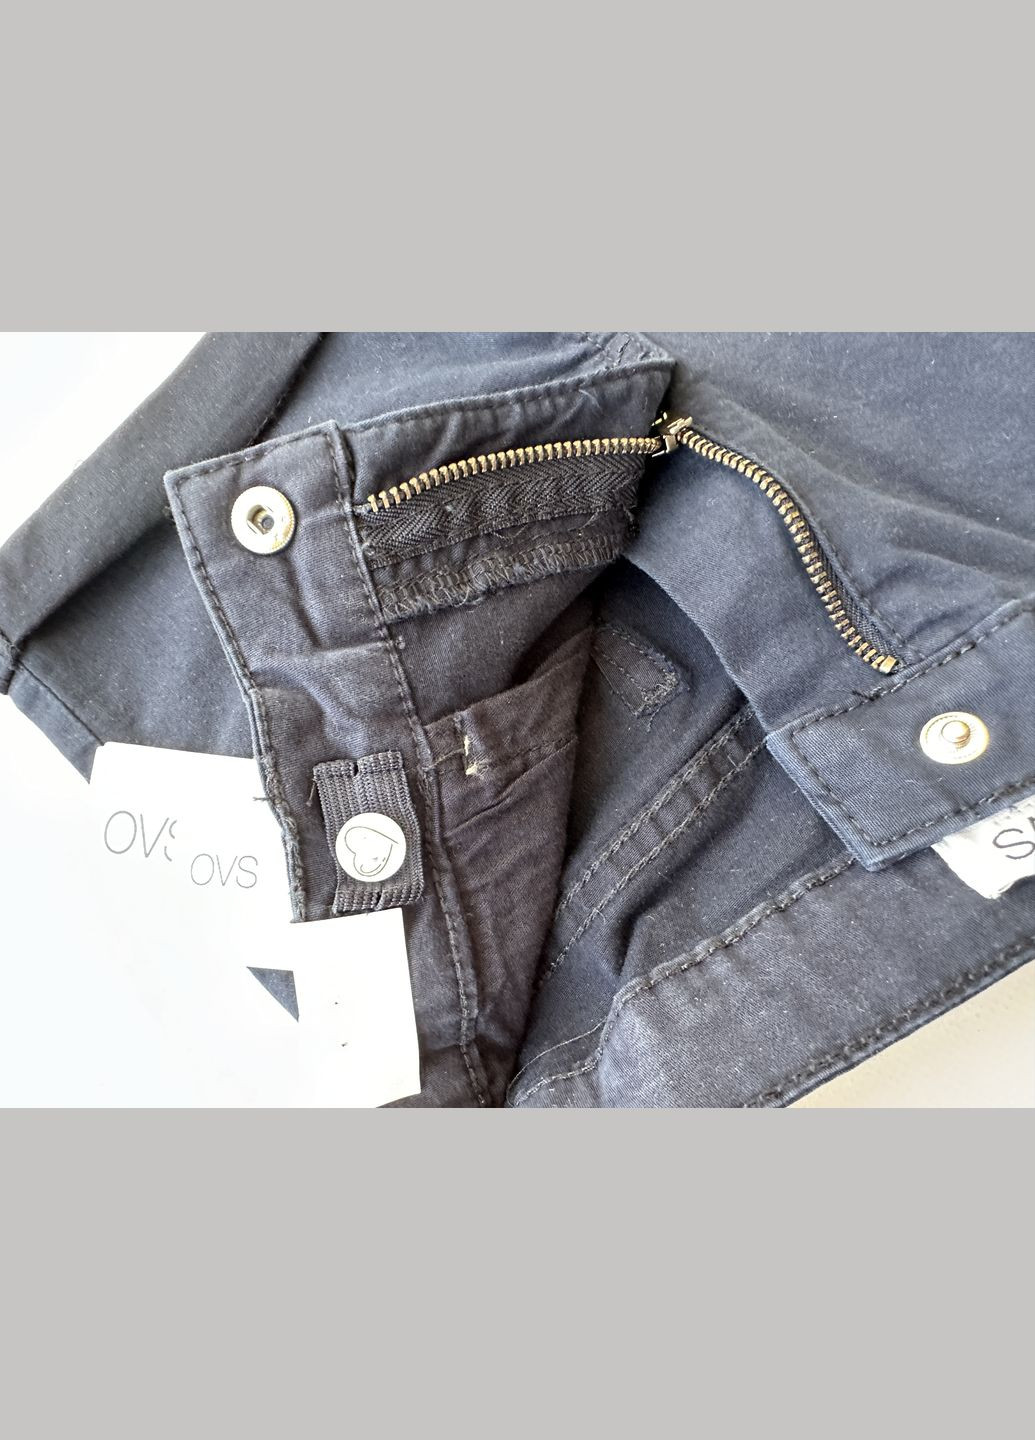 Пудровый летний комплект костюм для девочки футболка пудровая 2000-26+шорты темно-синие джинсовые 2000-22 (122 см) OVS